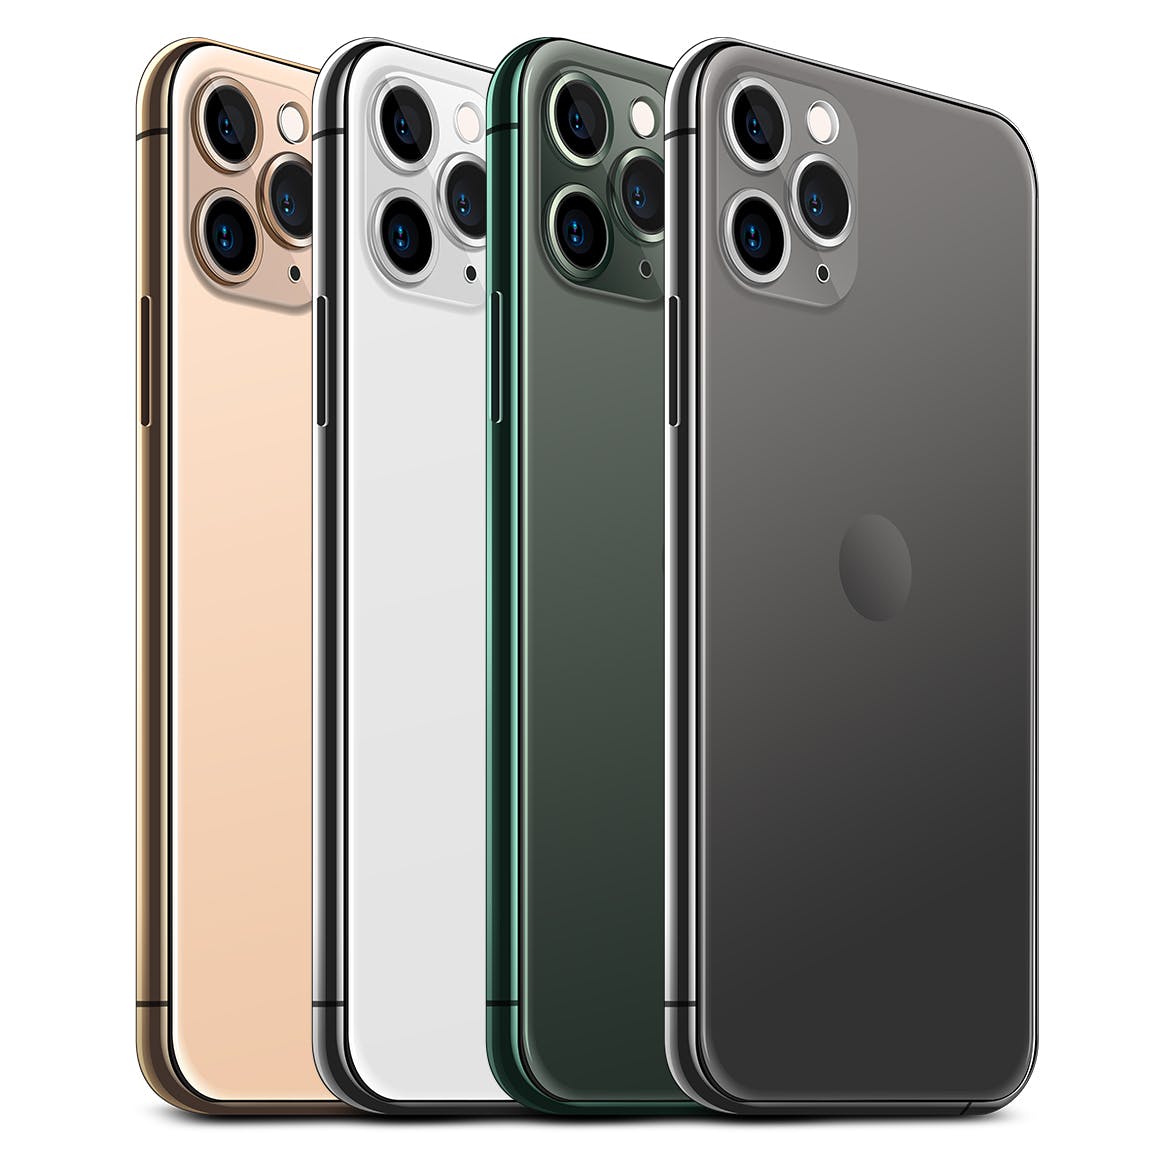 2019全新一代iPhone 11 Pro侧立面正反面视图样机模板 iPhone 11 Pro Layered PSD Mock-ups插图(4)